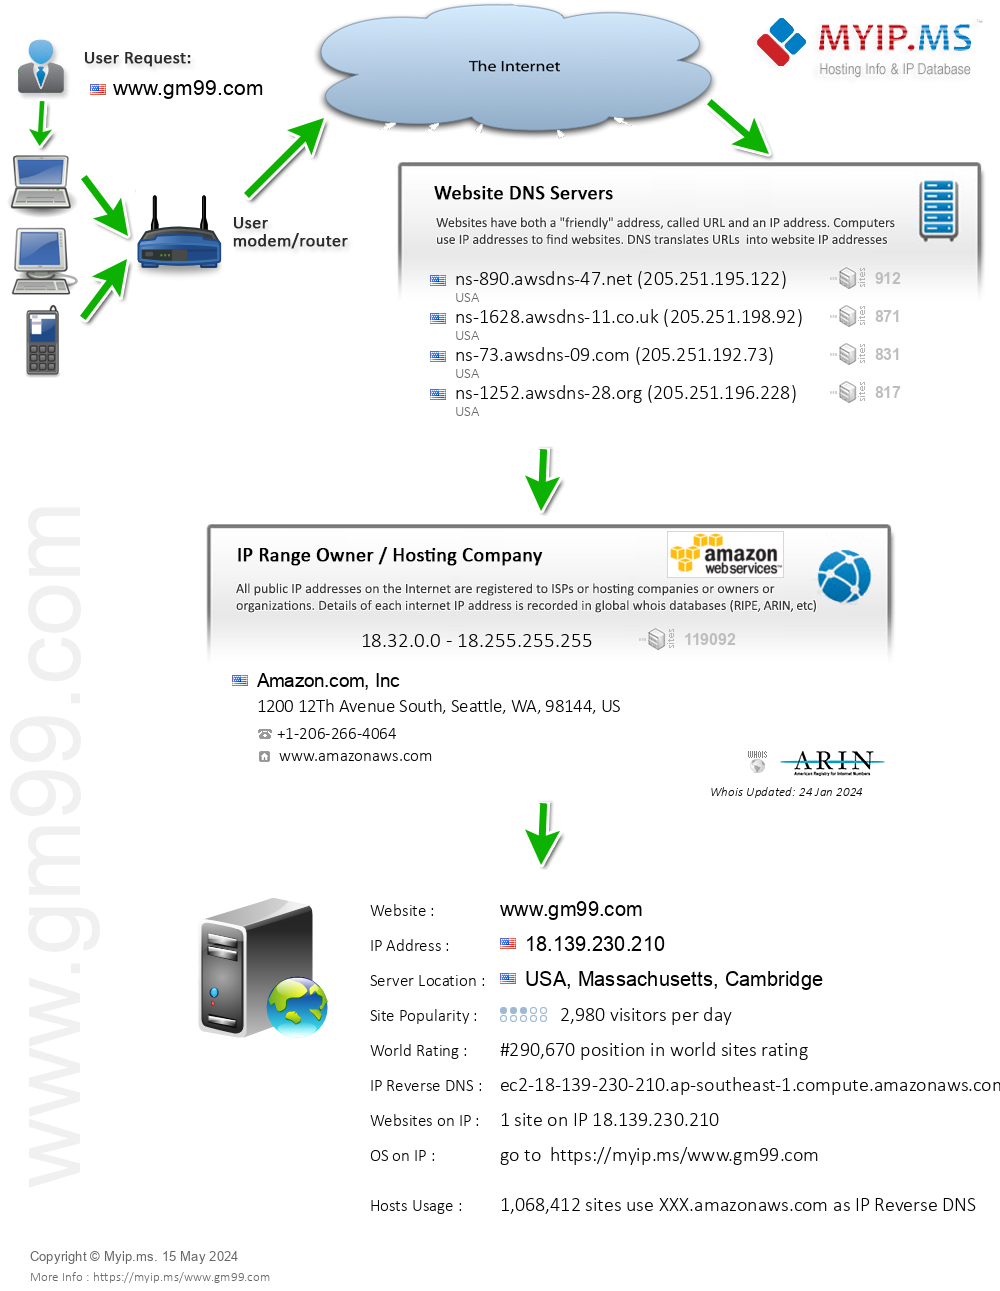 Gm99.com - Website Hosting Visual IP Diagram